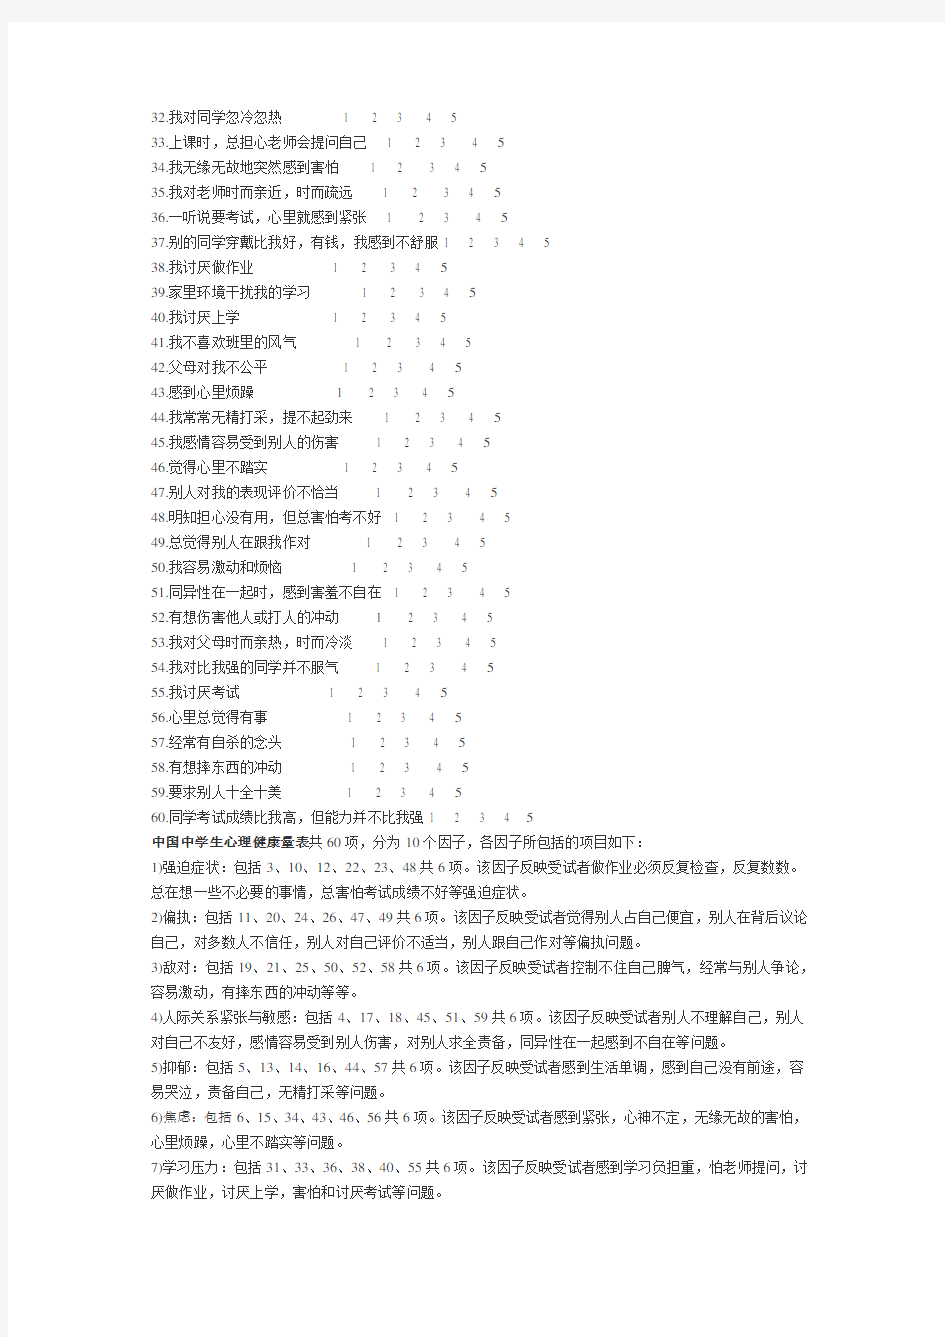 完整word版,中国中学生心理健康量表(题项与评分标准)